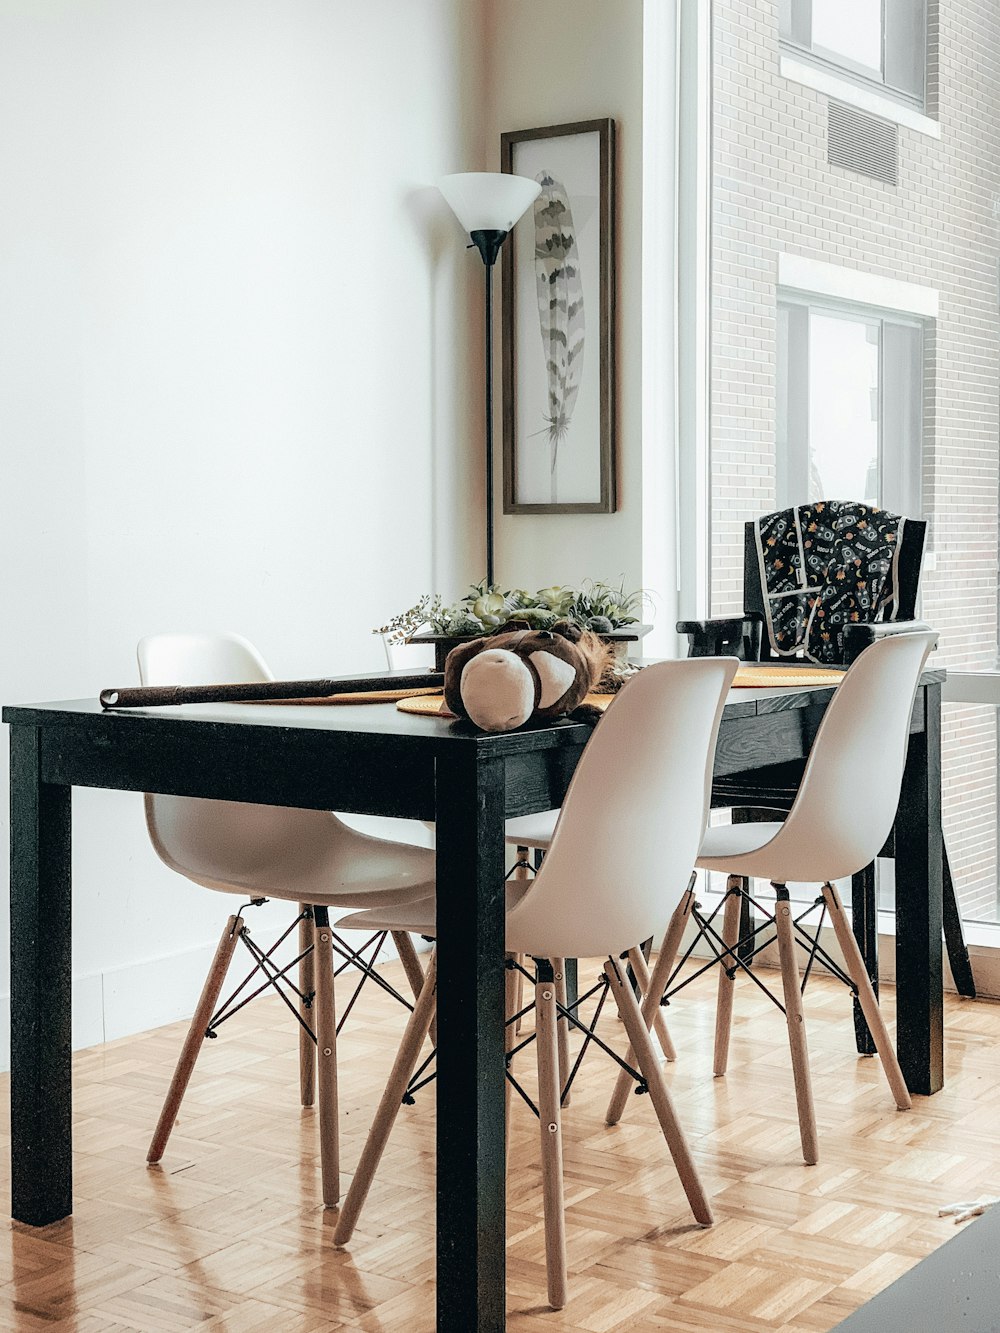 Salón de clases George Bernard dinastía Foto Mesa de madera negra y sillas blancas – Imagen Interior gratis en  Unsplash